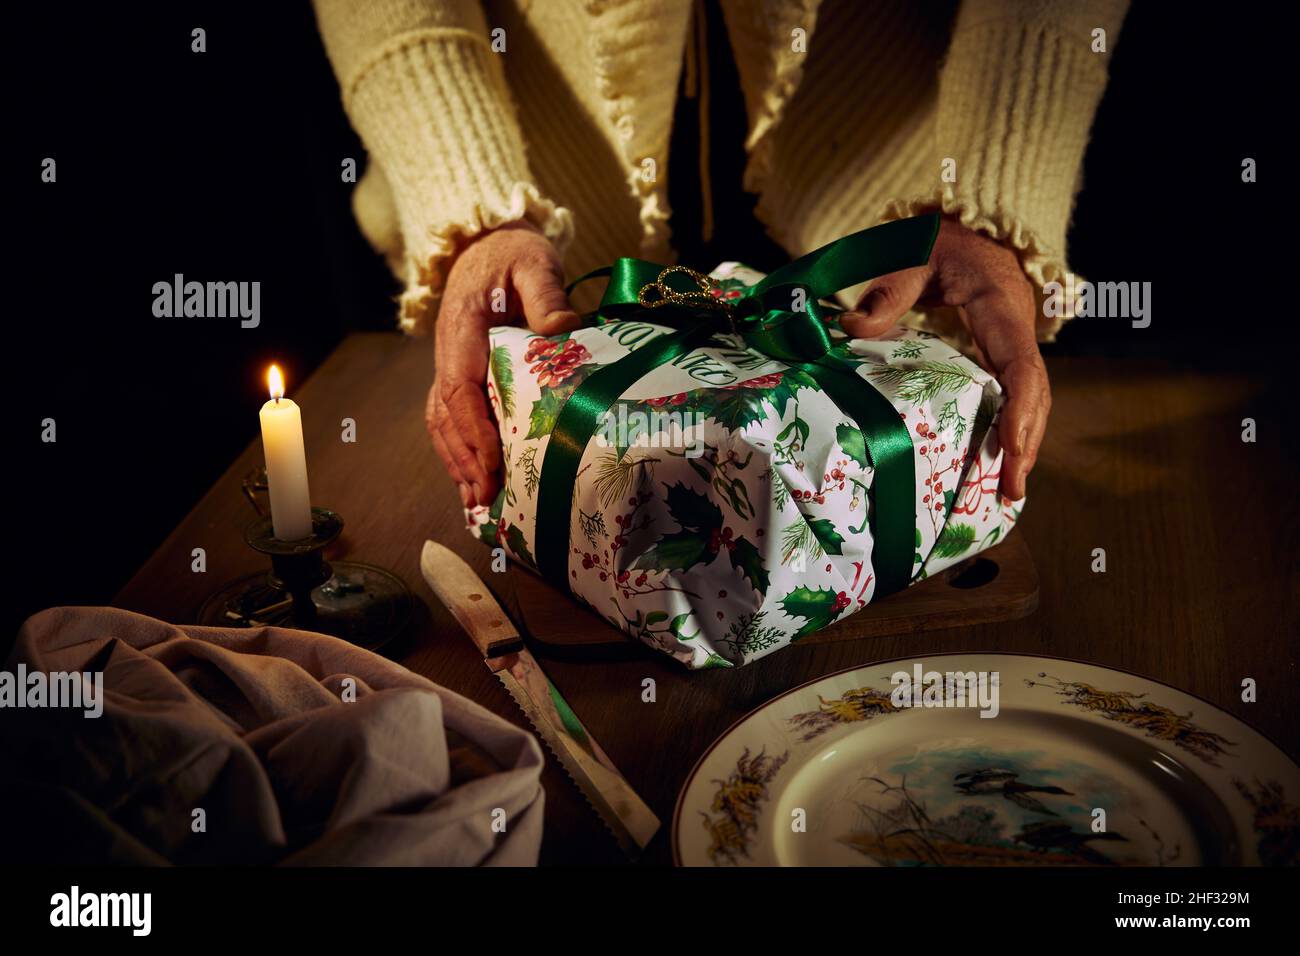 Una mujer sostiene con sus manos una torta de Navidad en una caja de regalo acostada en una tabla en una mesa de madera cerca de un cuchillo, una servilleta, un plato y una vela ardiente. Foto de stock